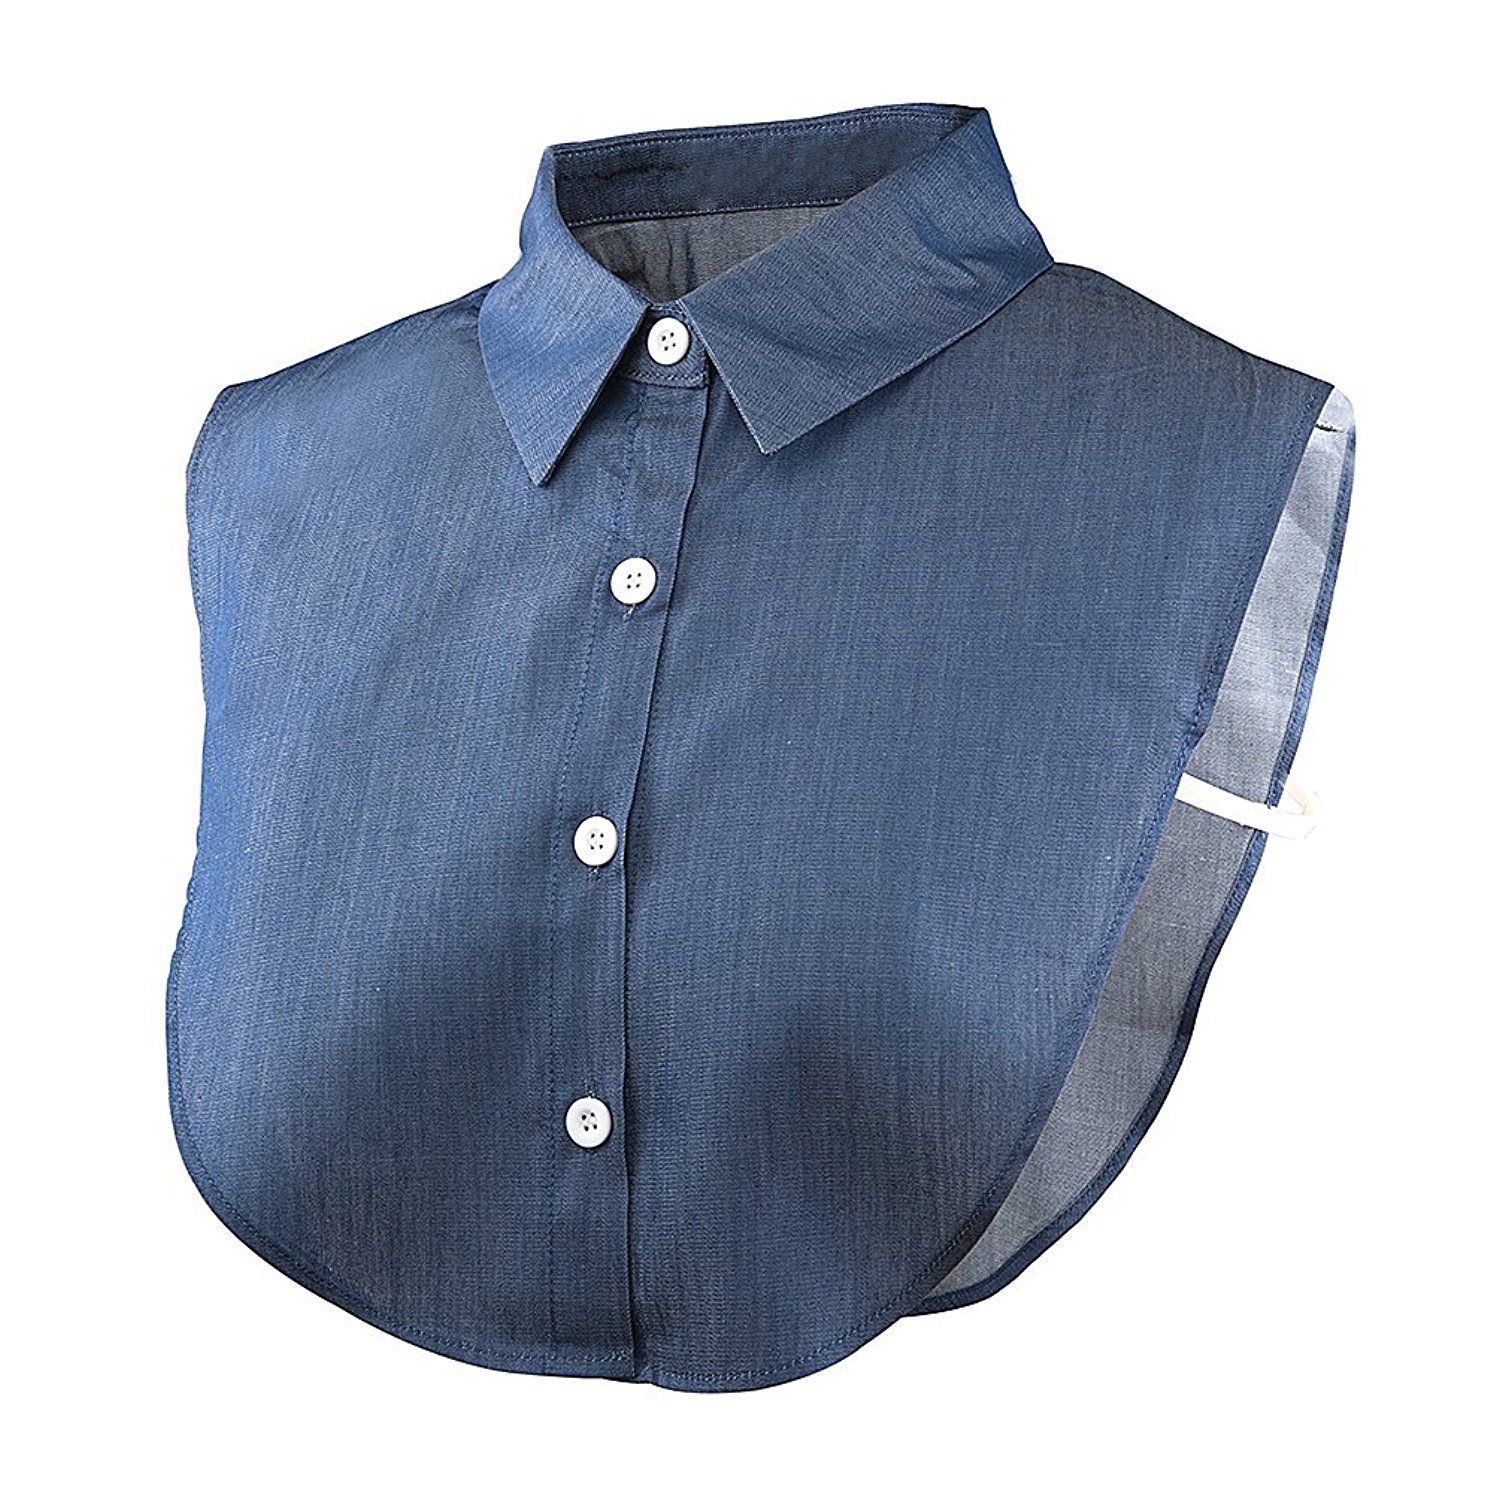 Alster  Herz Alster Herz Einsteckkragen Einsteckkragen, Blusenkragen, abnehmbare Hälfte Shirt Bluse A023, perfekt für einen gelungenen Business Look Jeans | Einsteckkragen